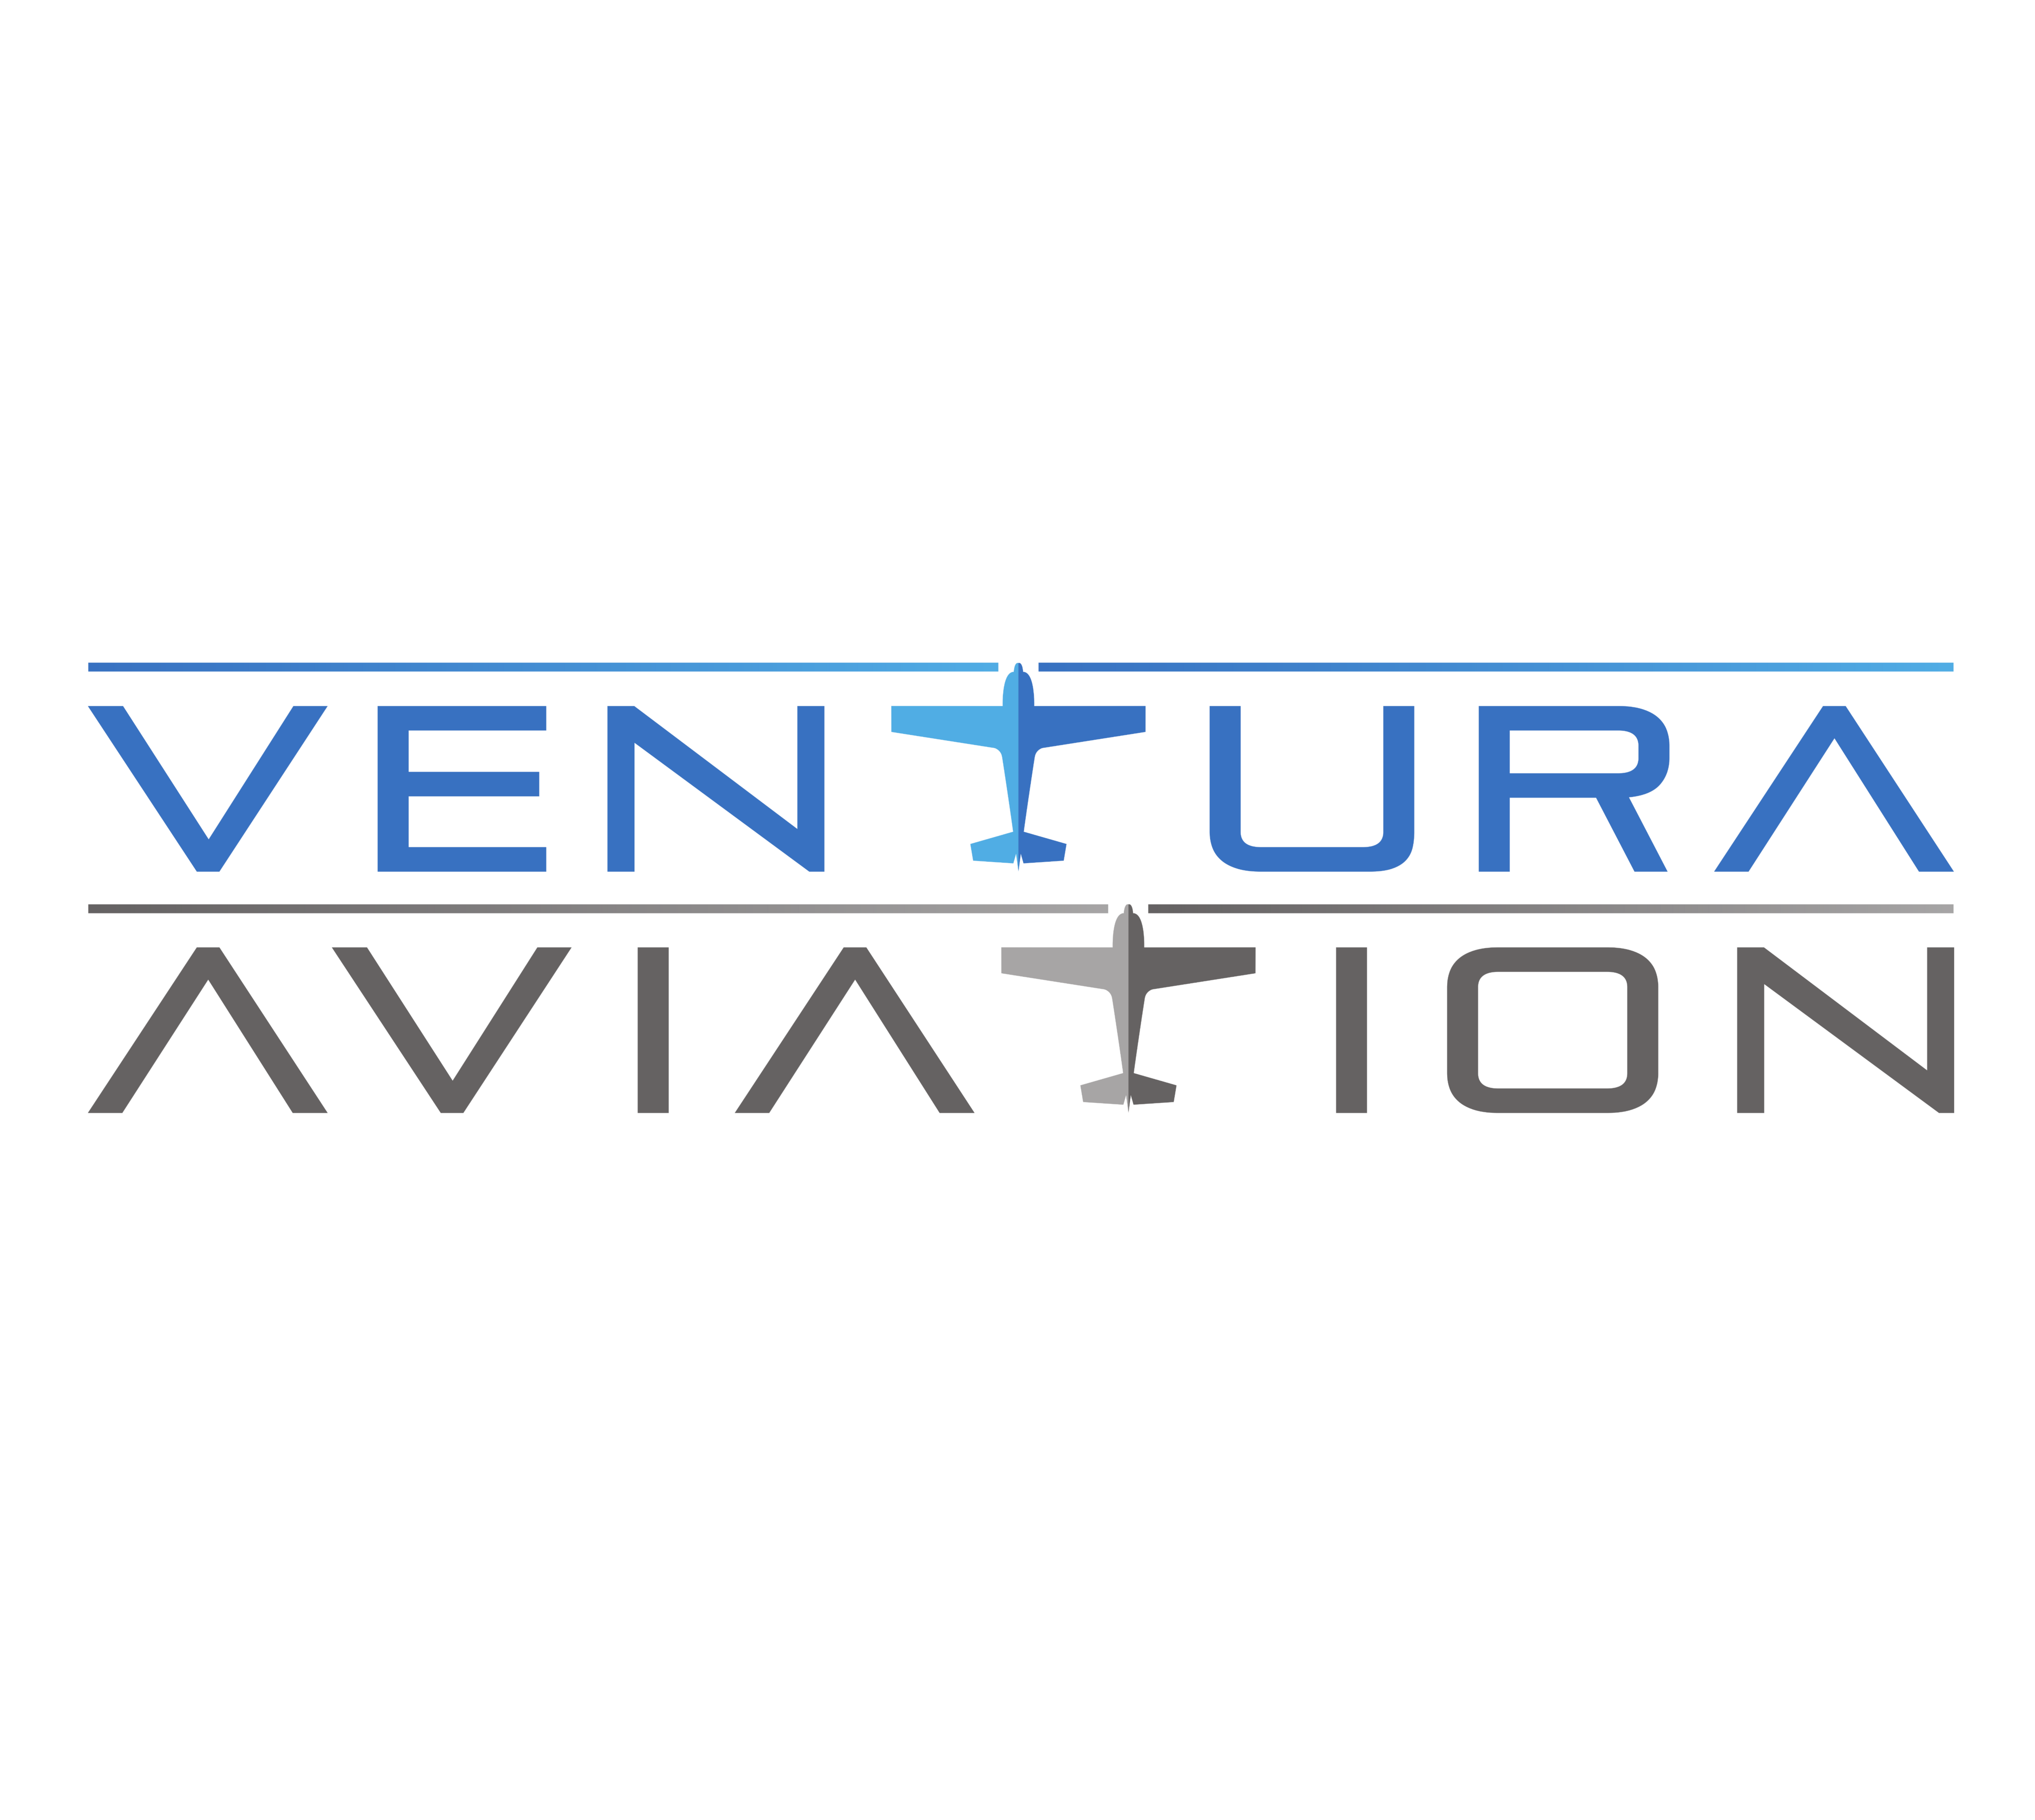 Ventura Aviation master logo high resolution 001